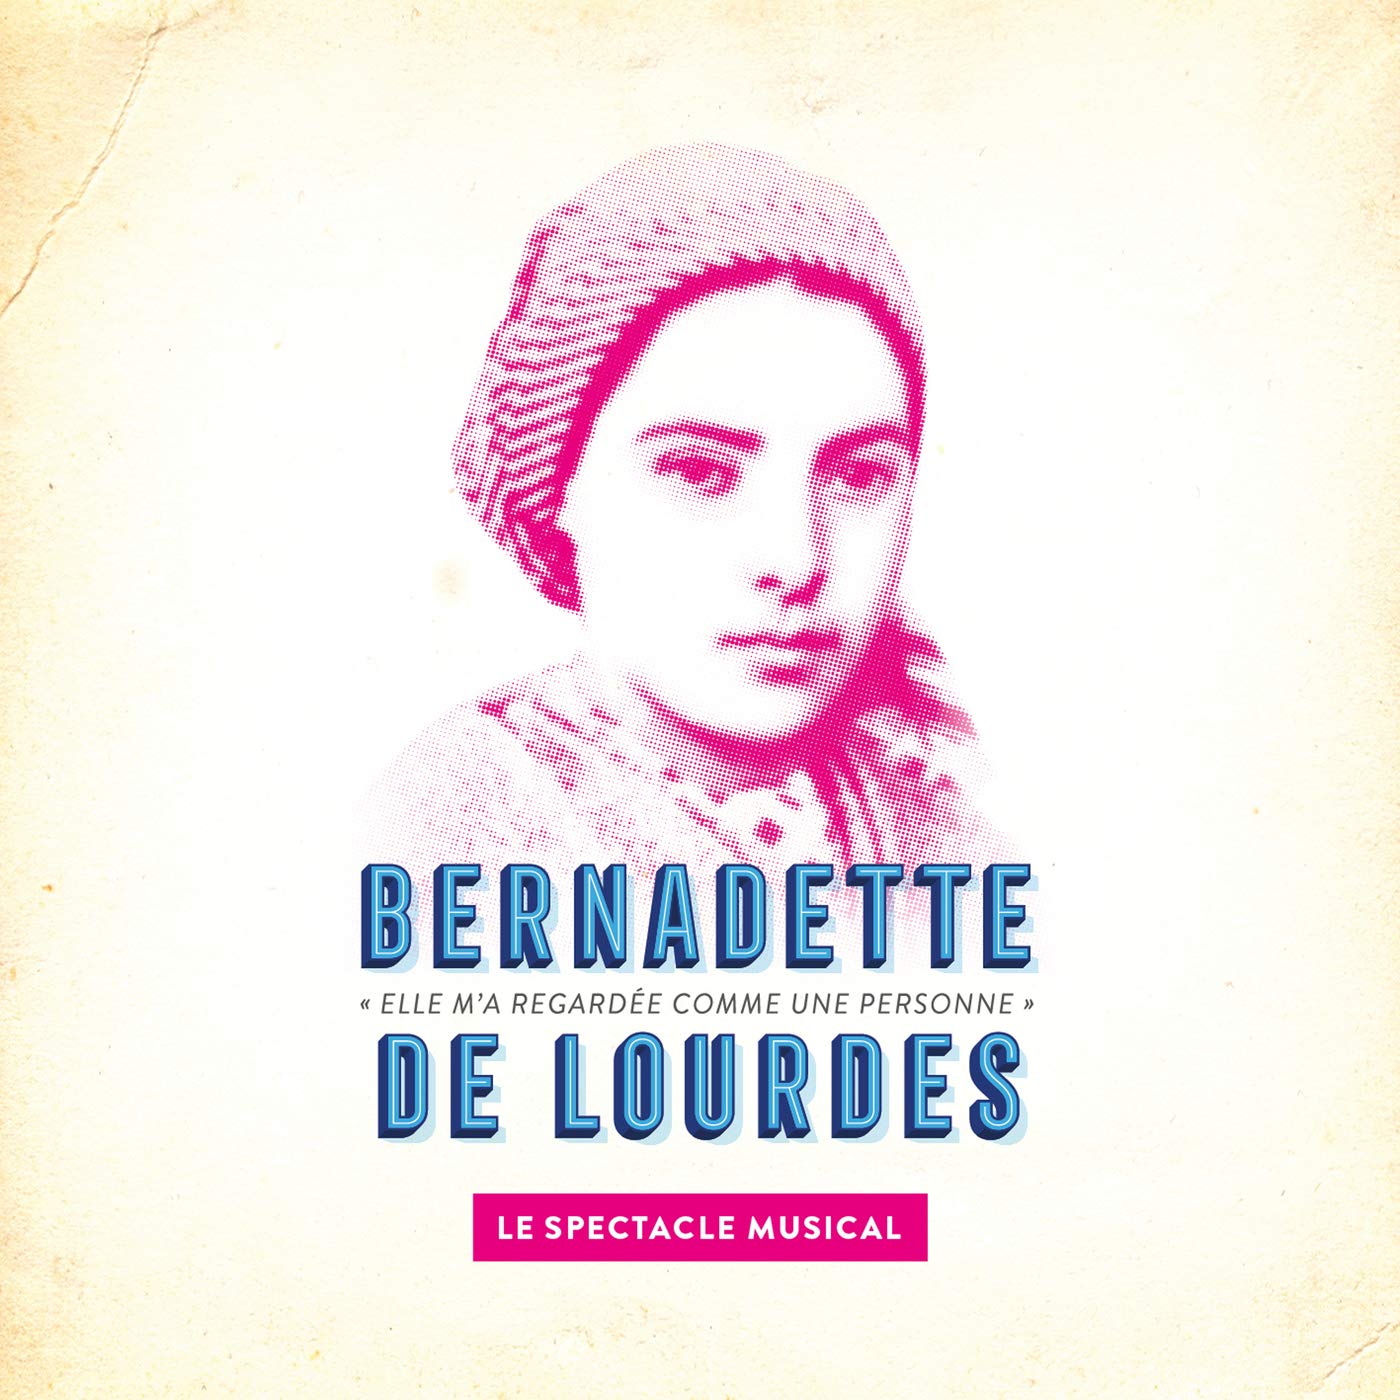 Bernadette De Lourdes - Le Spectacle Musical en Palais des Sports - Dome de Paris Tickets